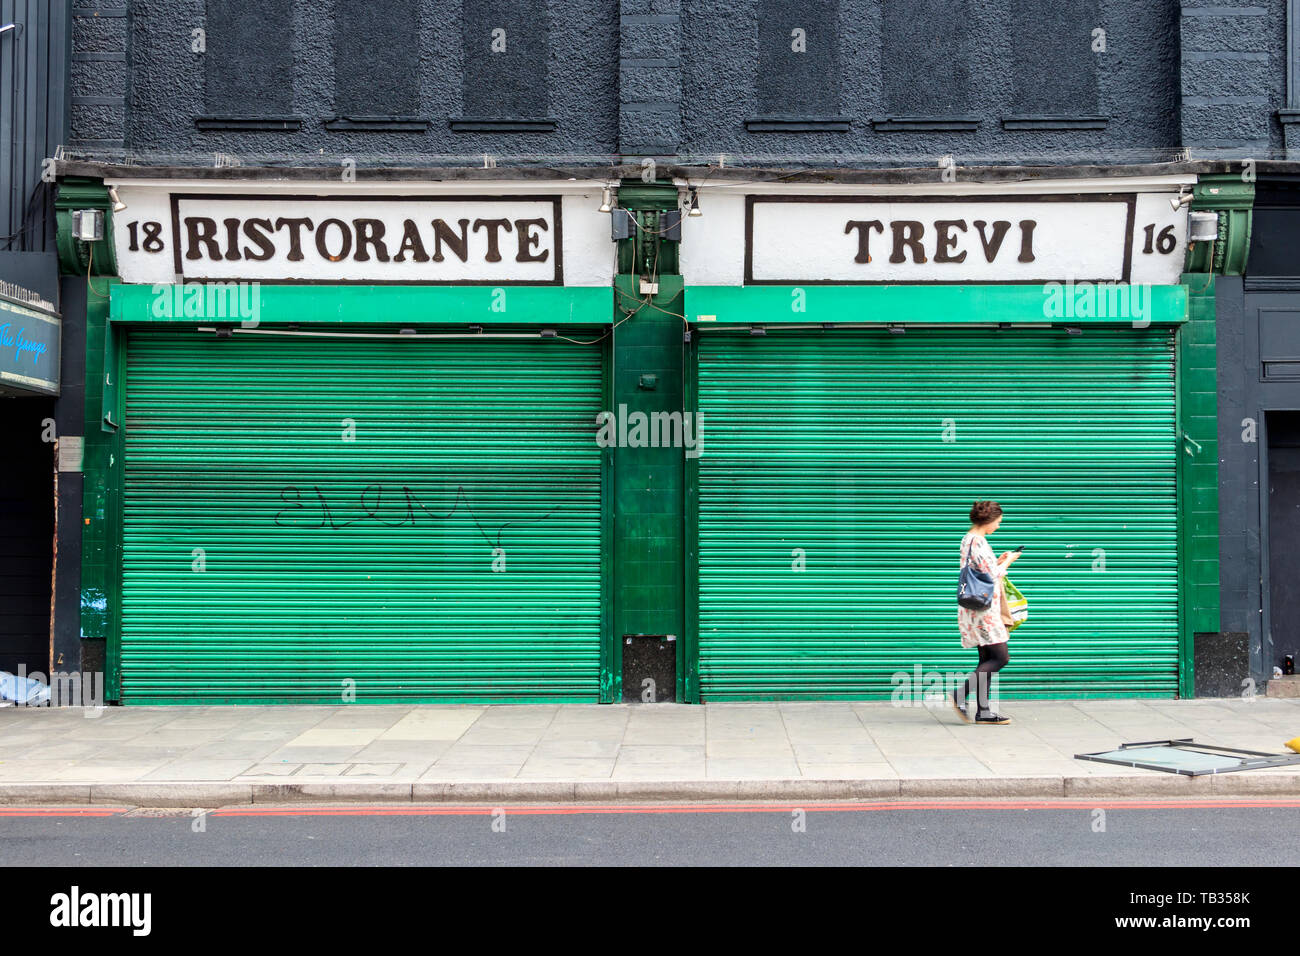 Una donna che cammina passato Ristorante Trevi, un ristorante italiano a Highbury, angolo chiuso con il suo verde-metallo verniciato serrande giù, London, Regno Unito Foto Stock